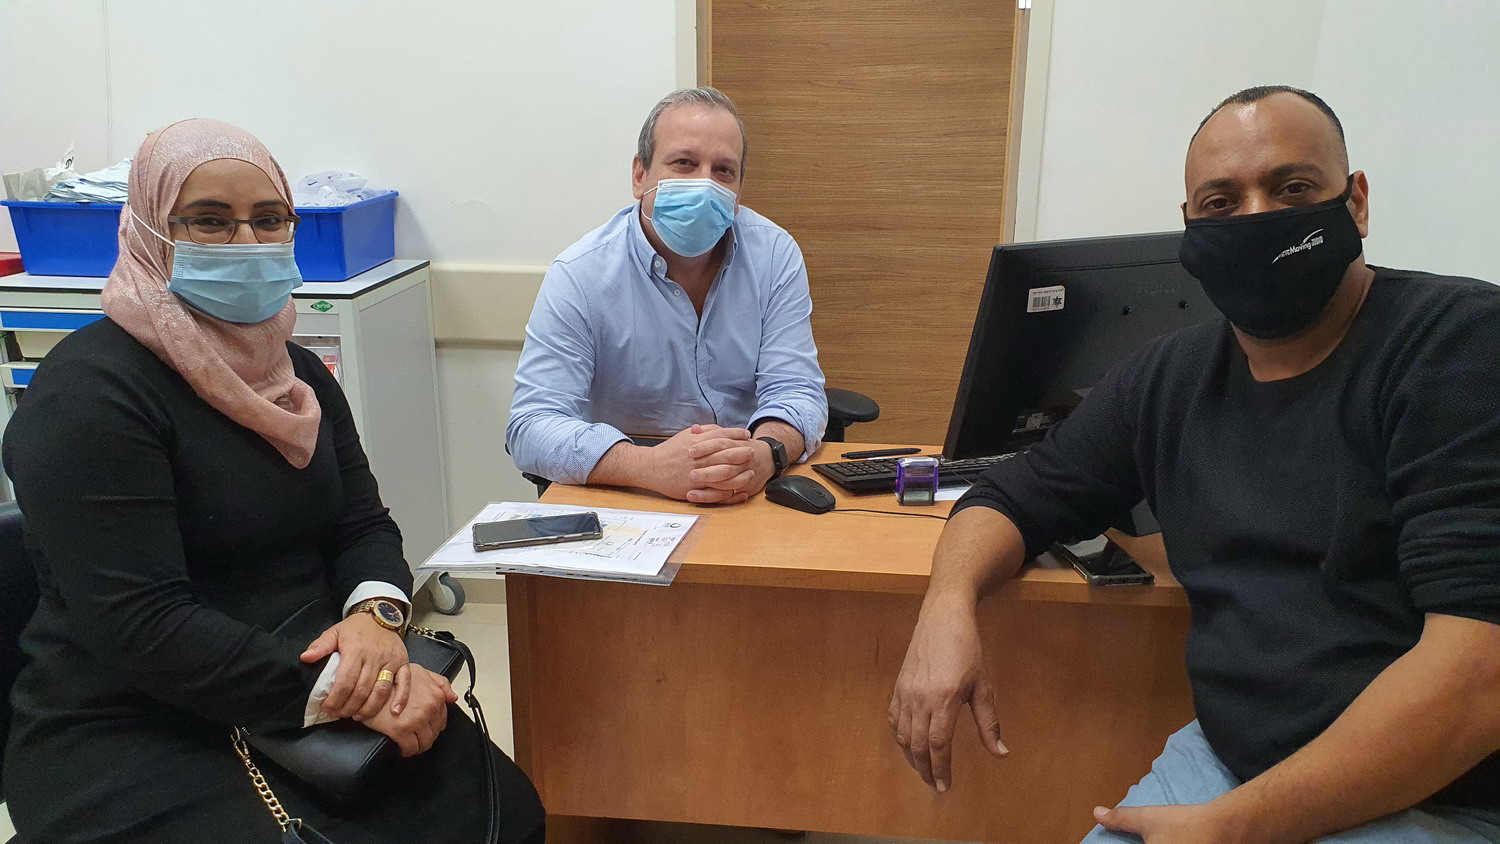 אמנה ומוחמד גאמל בביקורת השבוע אצל דר חיימוביץ במרפאה בהלל יפה